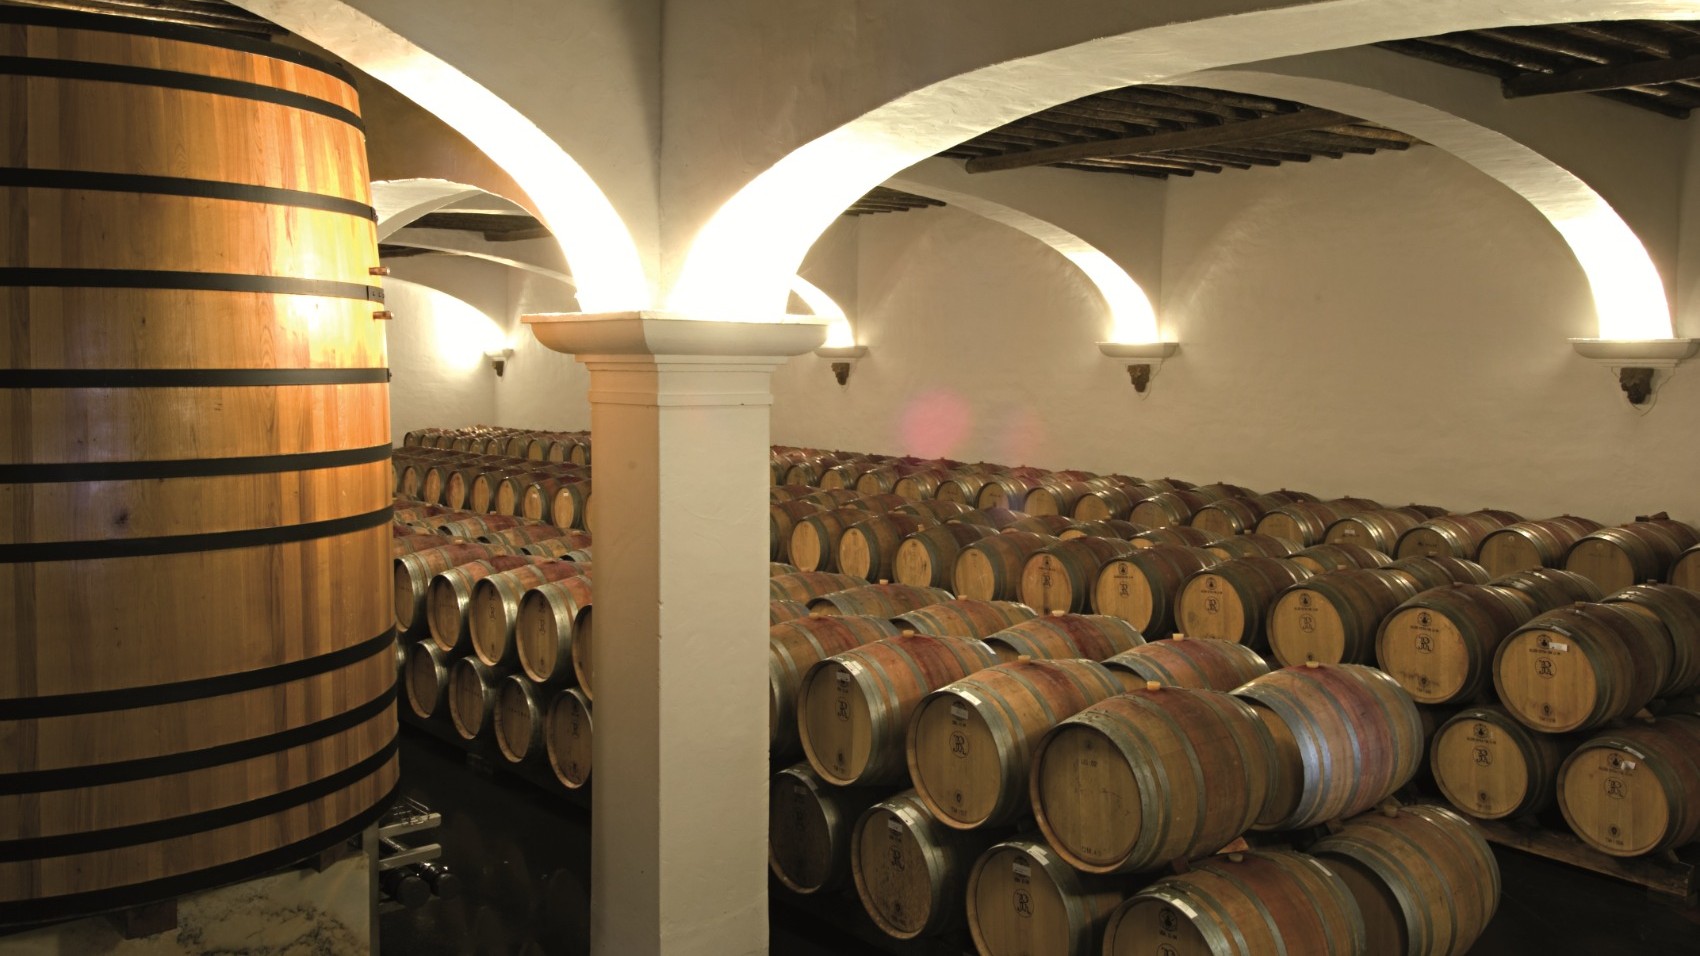 Lisbon-&-Surroundings-with-Alentejo-World-Heritage-JPR-wine-barrels